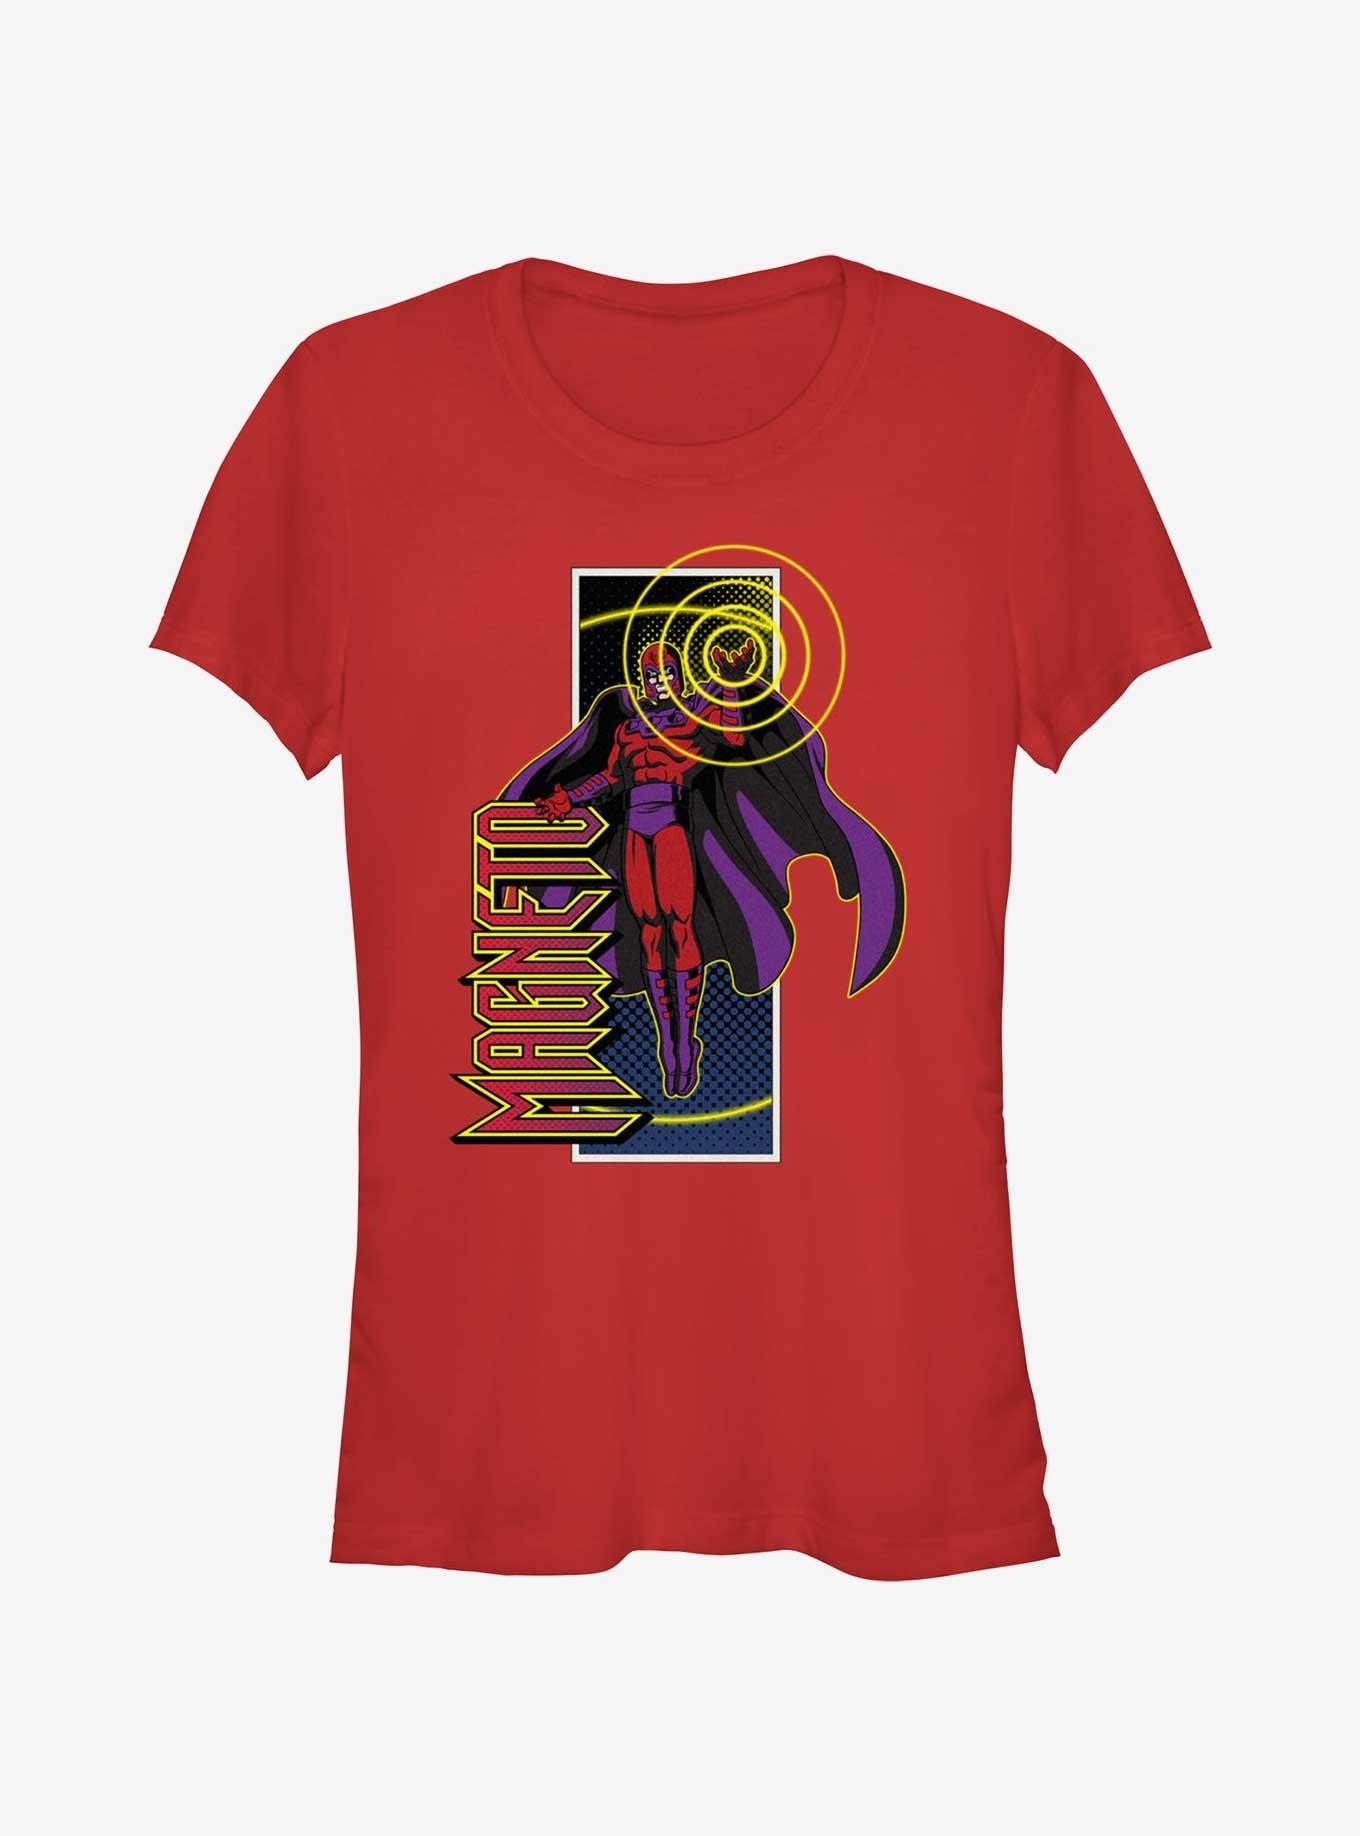 X-Men '97 Magneto Full Power Girls T-Shirt, RED, hi-res